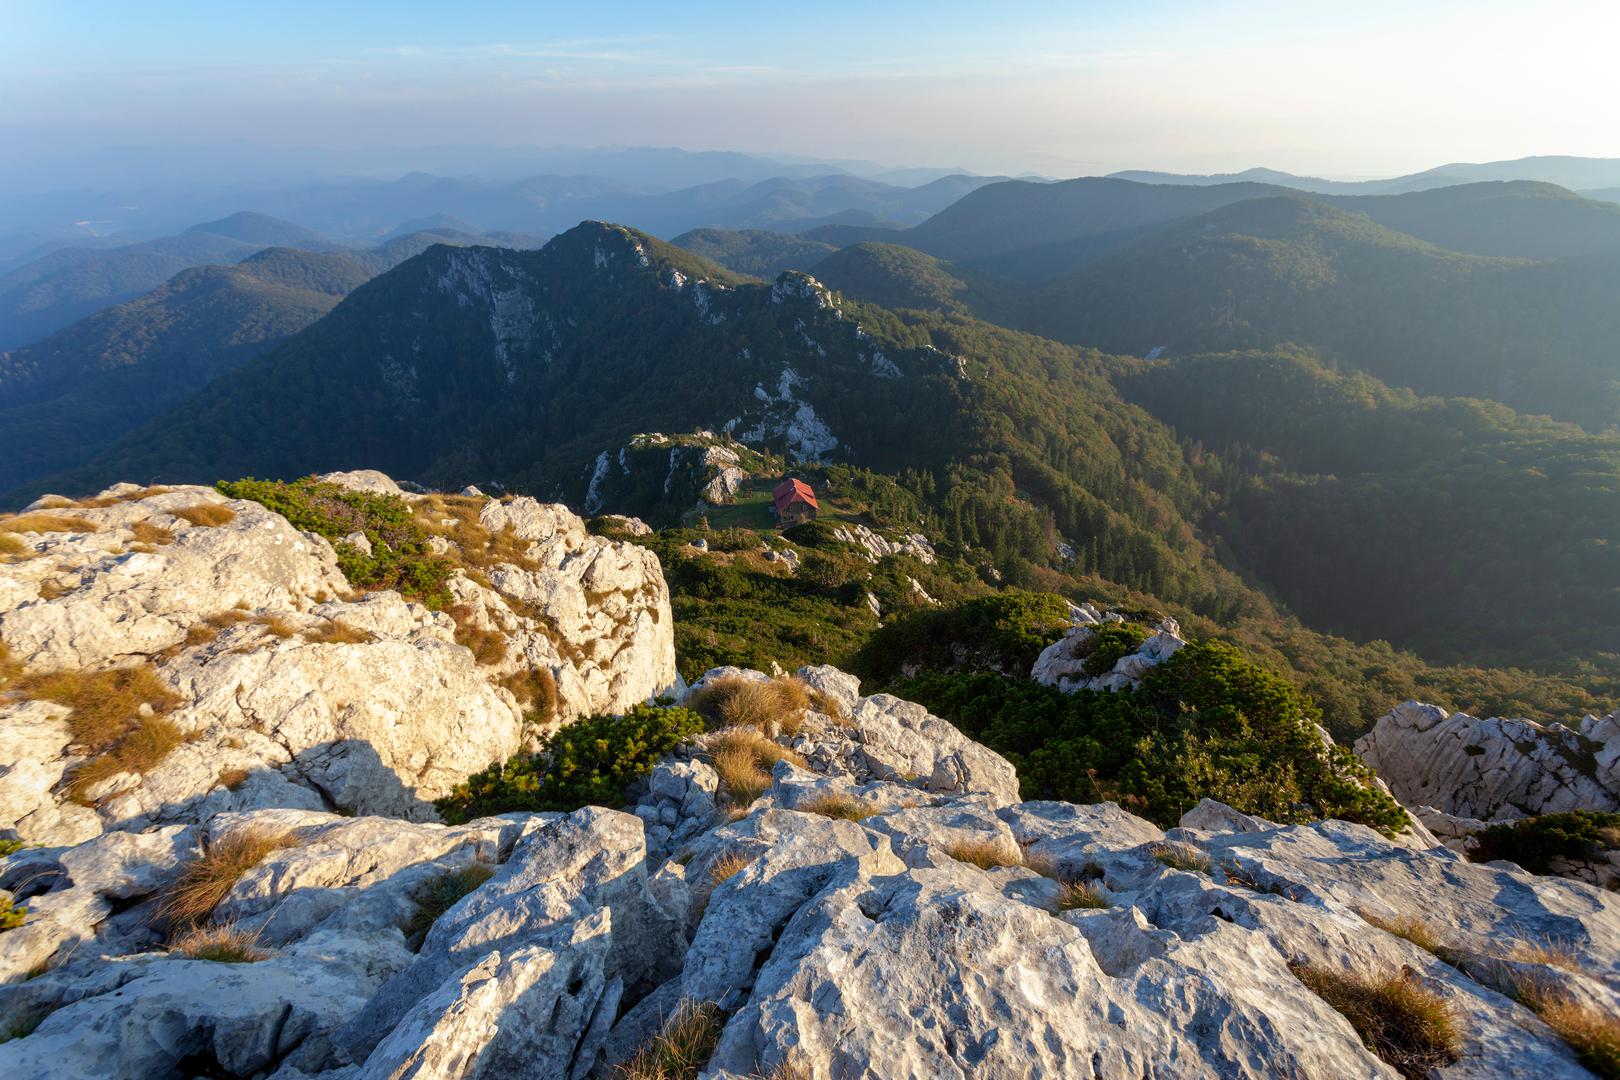 Poznati britanski The Guardian izdvojio je pet najljepših Europskih nacionalnih parkova, a među njima se našao i jedan hrvatski. Nudeći izuzetan krajolik, rijetke divlje životinje i spektakularne staze, Risnjak definitivno vrijedi posjetiti! A, možete li prepoznati svih osam naših nacionalnih parkova samo prema jednoj slici? Probajte! 